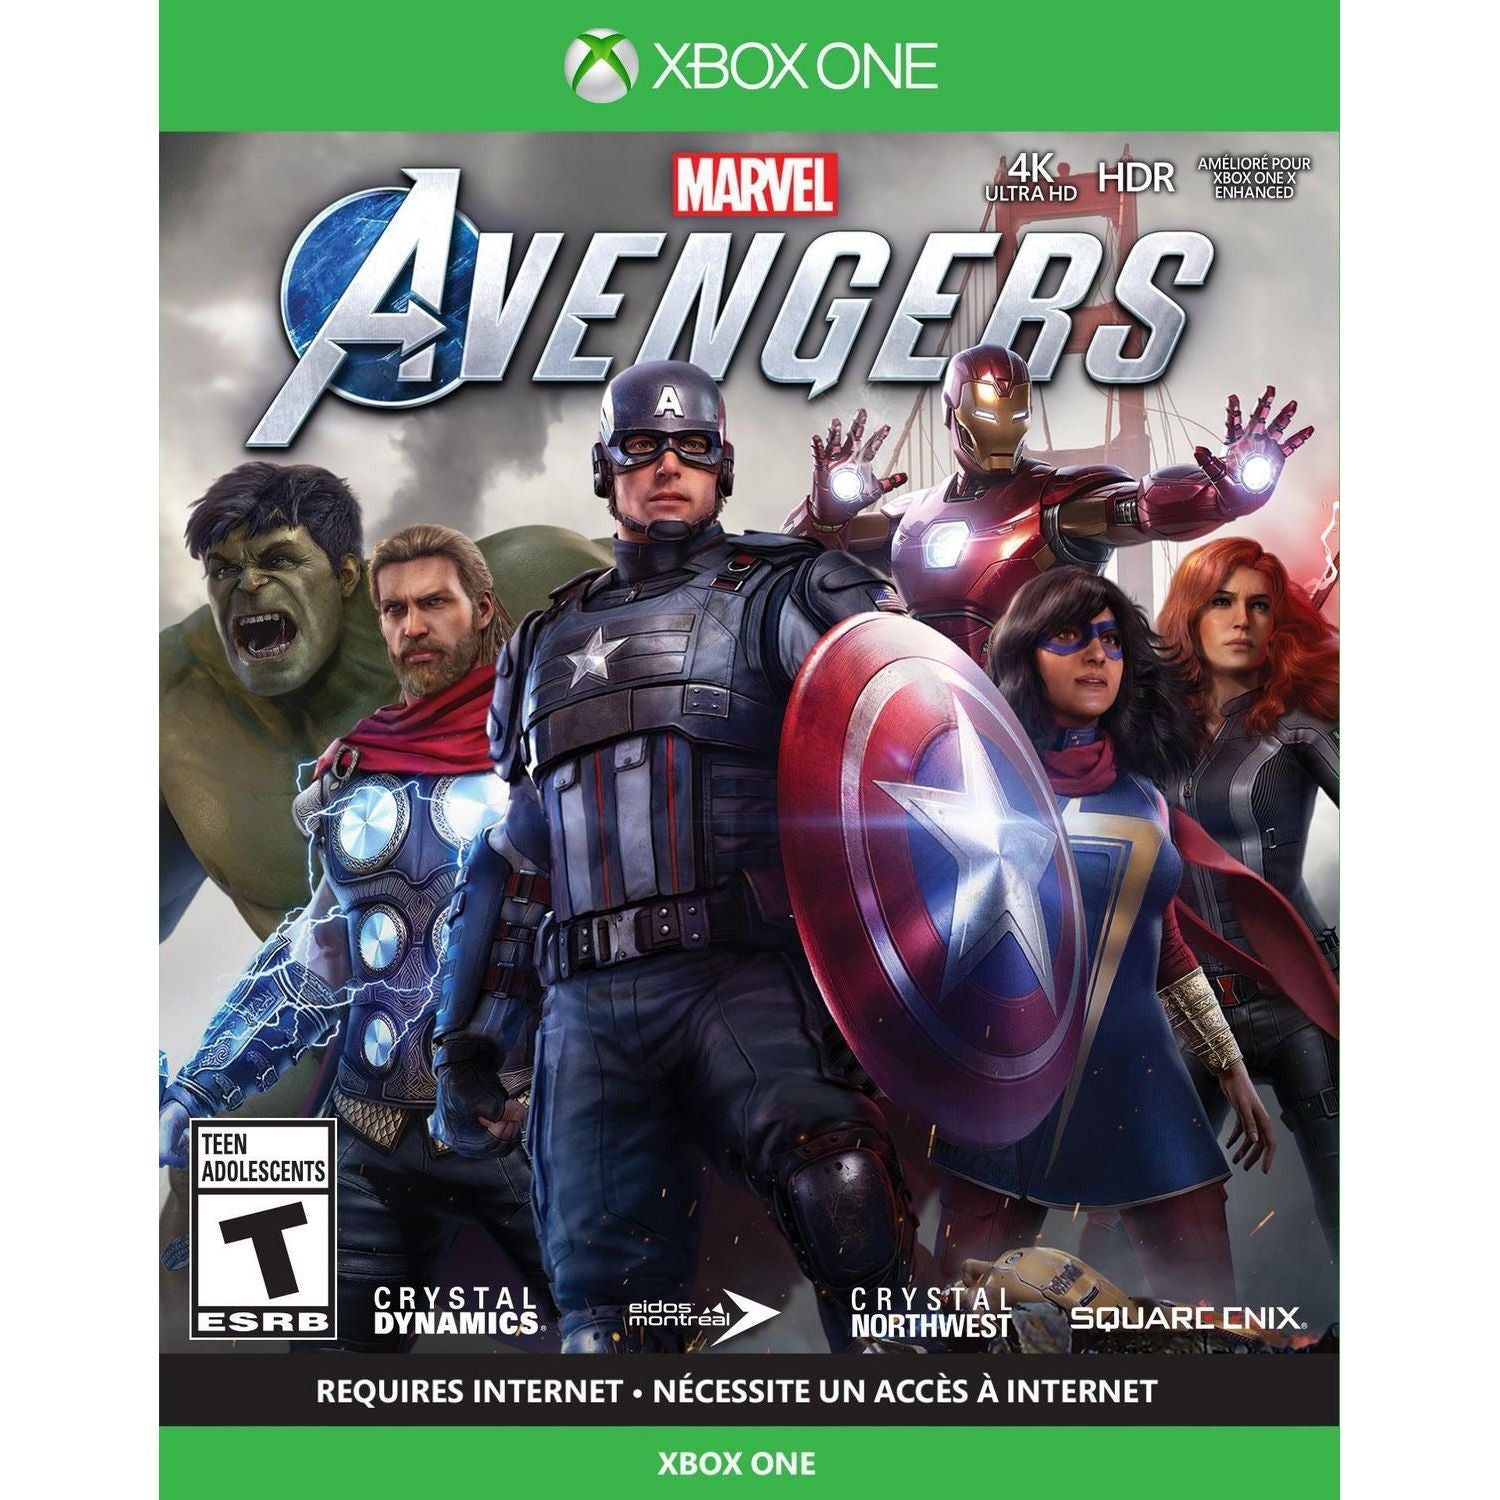 Xbox One - Marvel's Avengers (Sealed)